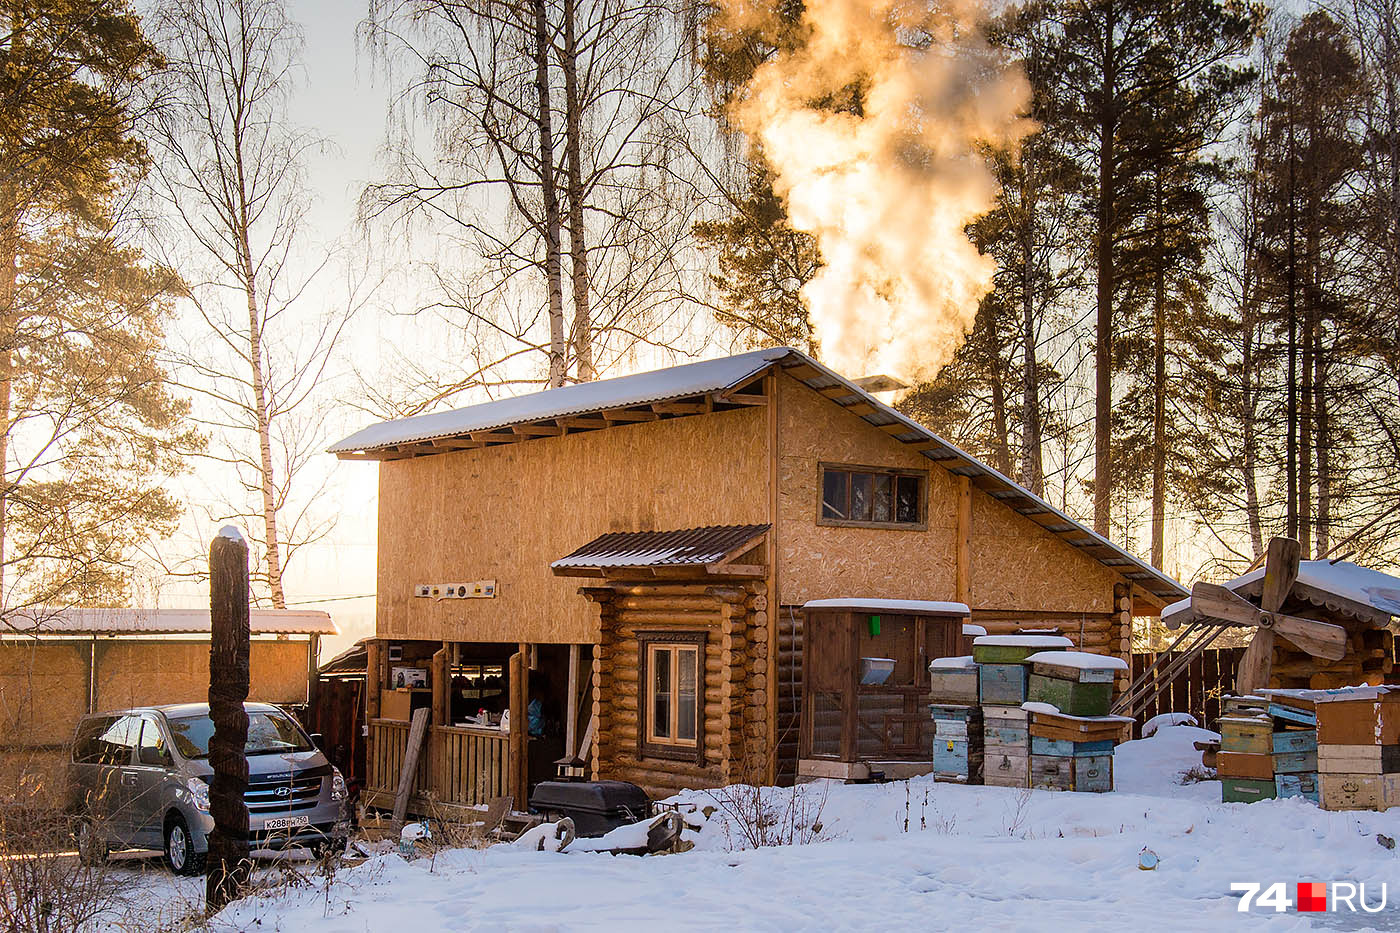 В деревне нет газа, а электричество подаётся с серьёзными перебоями, так что печка — единственный выход согреться зимой